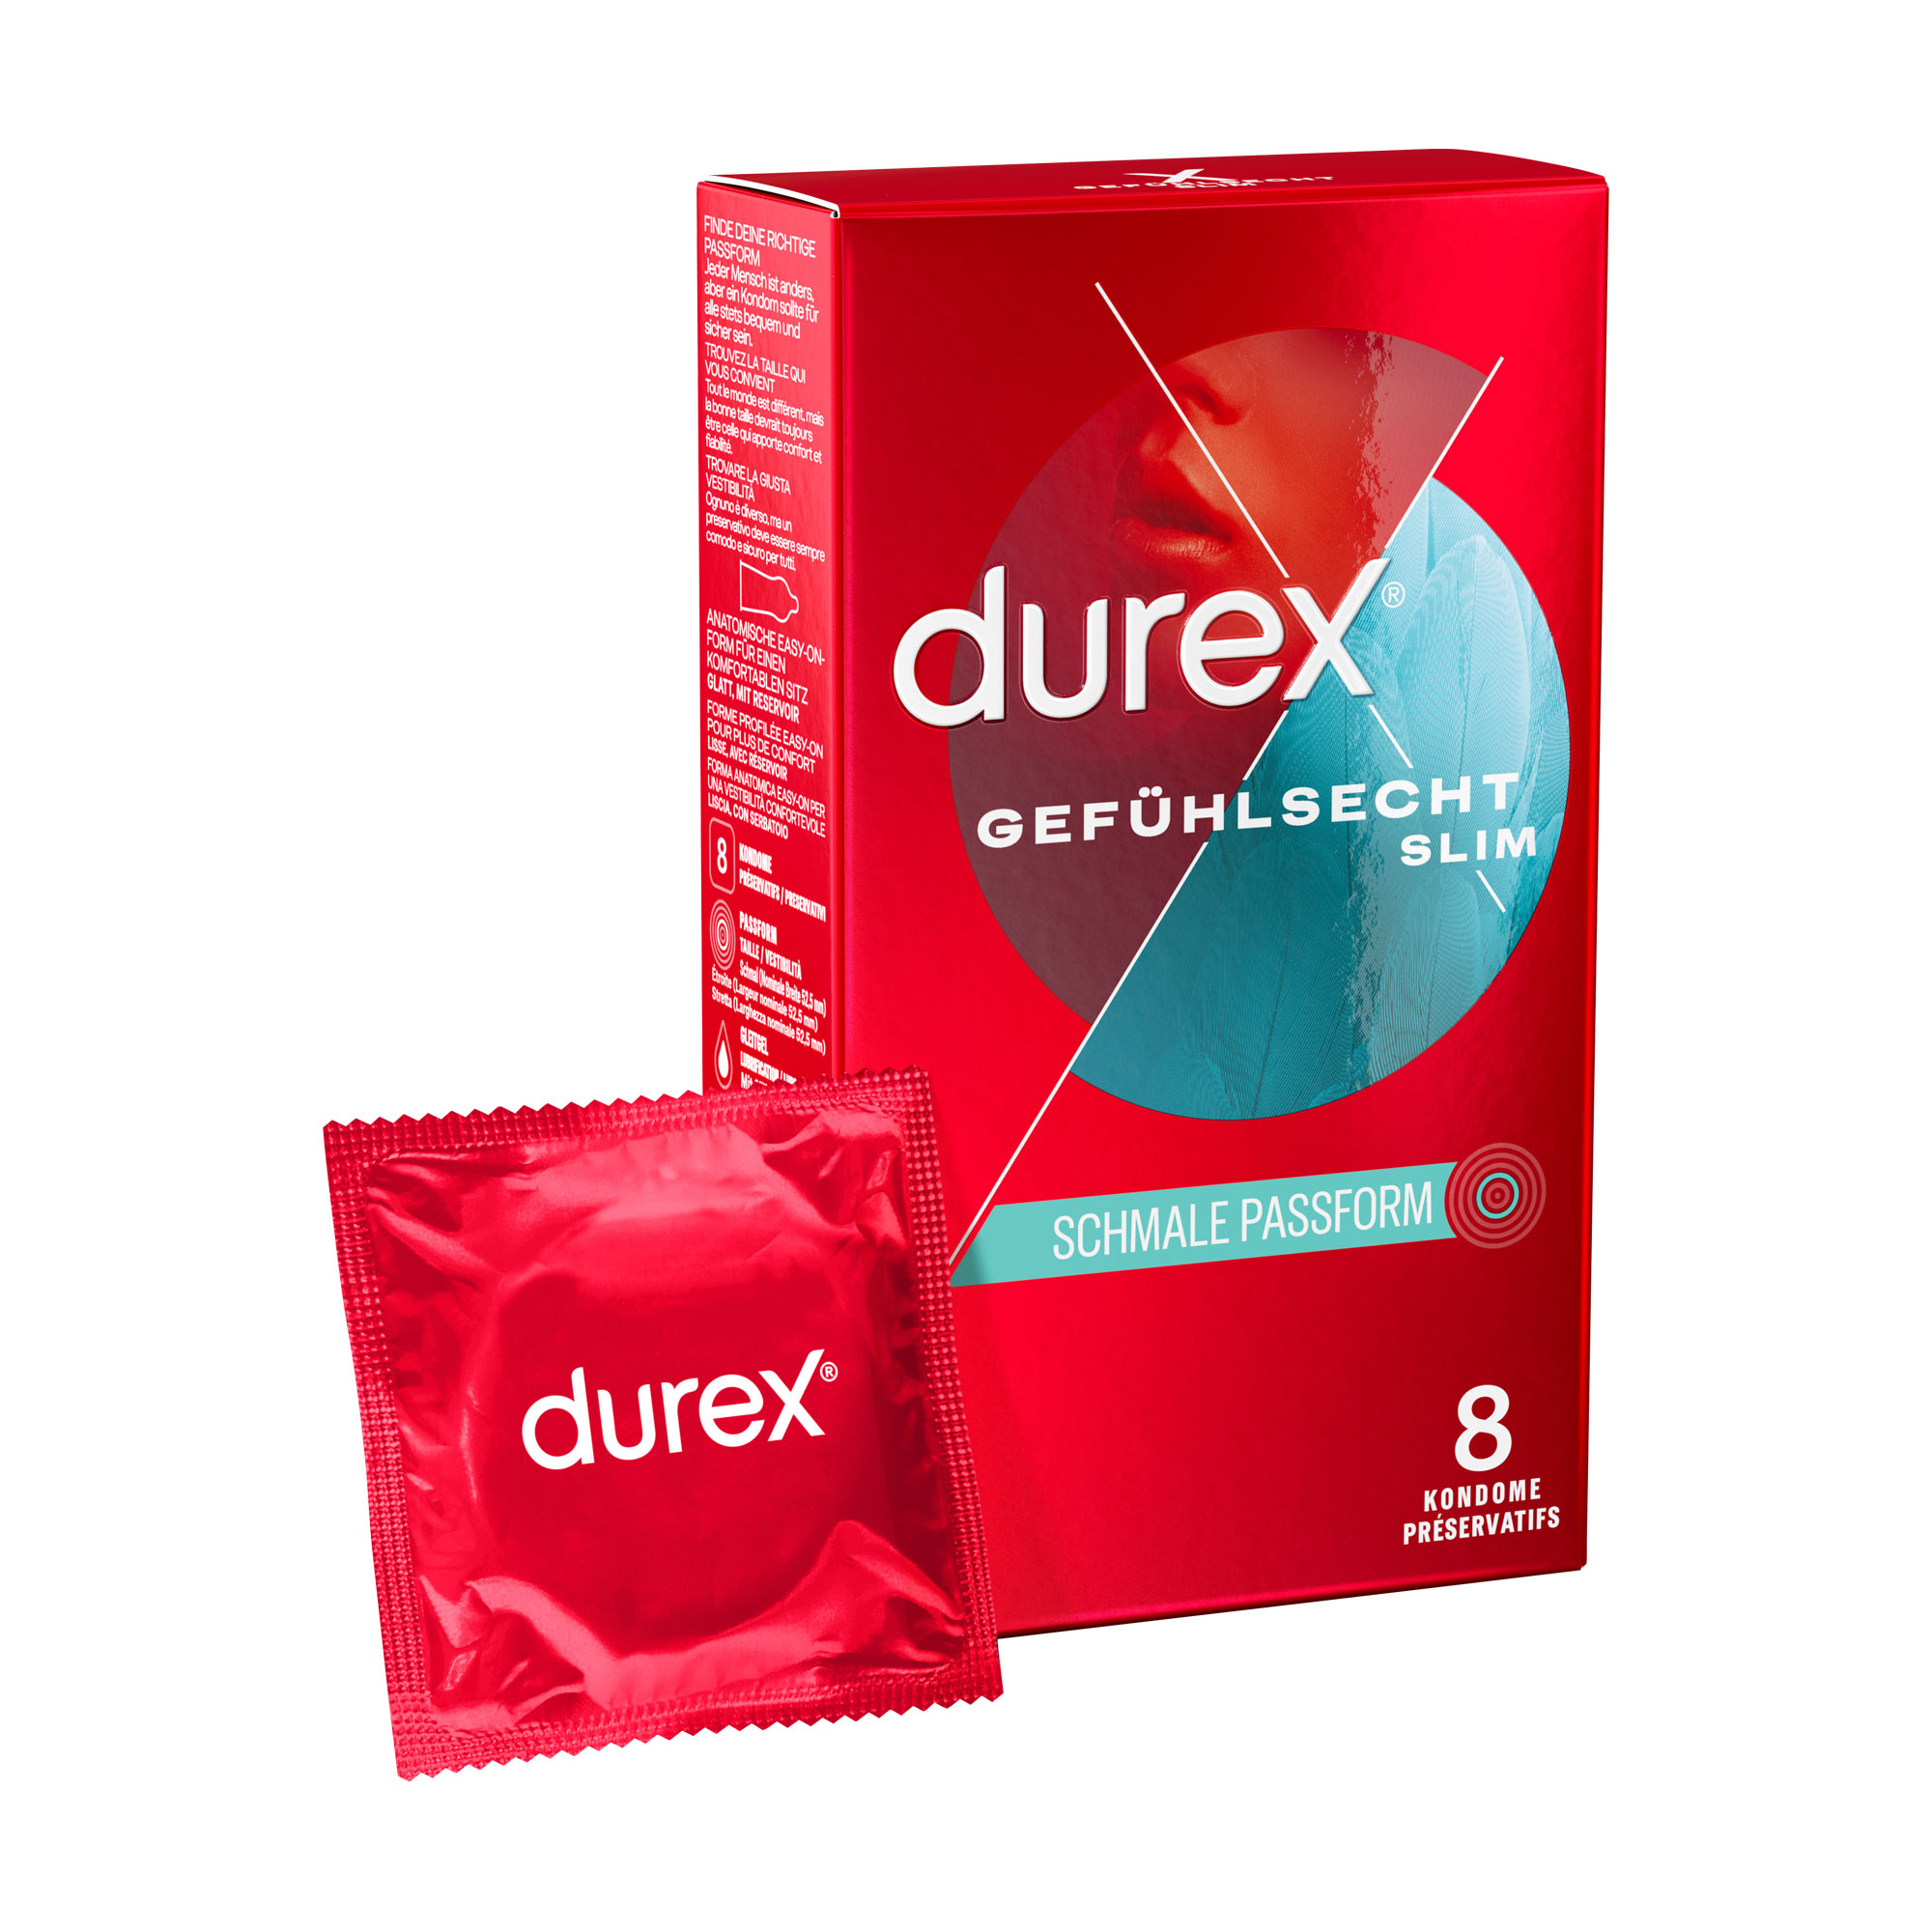 Dünne Kondome für ein intensives Gefühl und innige Zweisamkeit. Schlanke Passform.